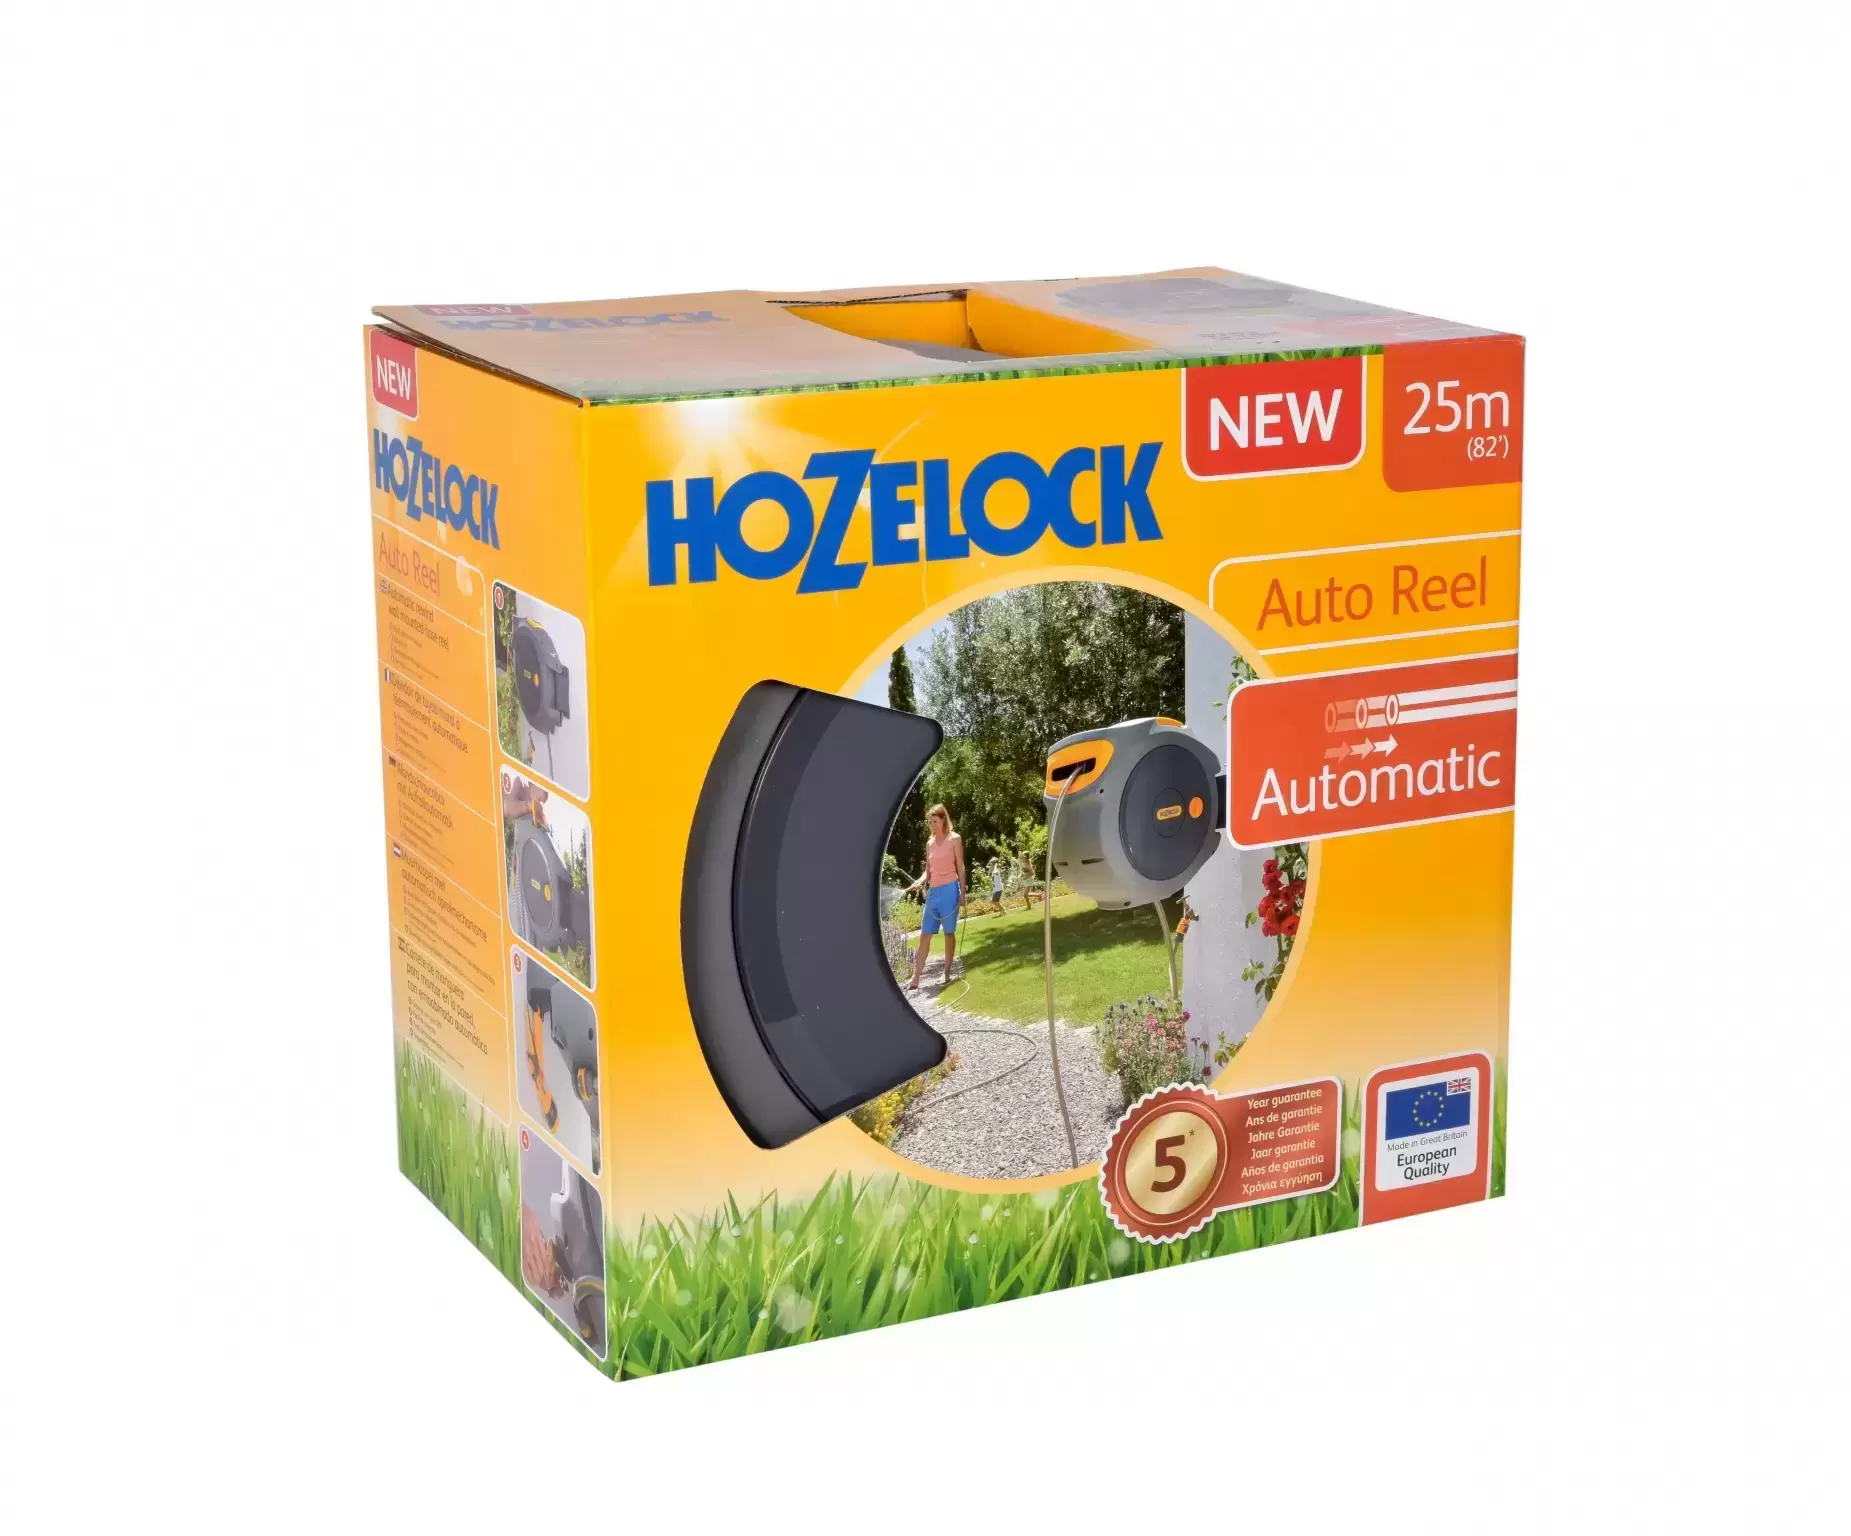 Hozelock Auto Reel With Hose & Multi Spray Gun - Cowell's Garden